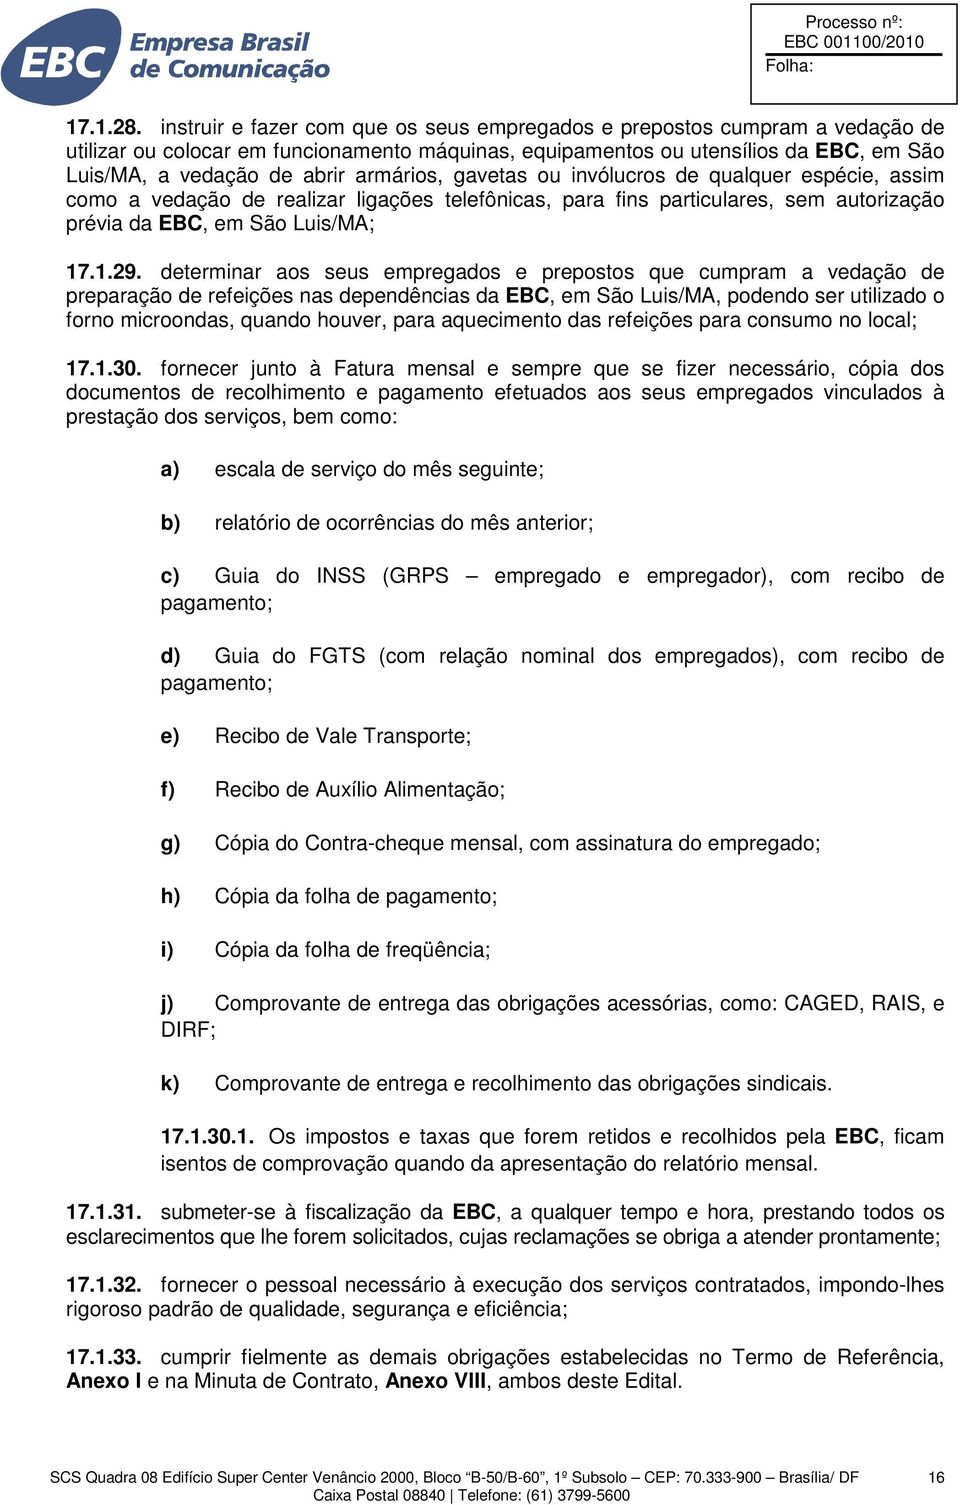 armários, gavetas ou invólucros de qualquer espécie, assim como a vedação de realizar ligações telefônicas, para fins particulares, sem autorização prévia da EBC, em São Luis/MA; 17.1.29.